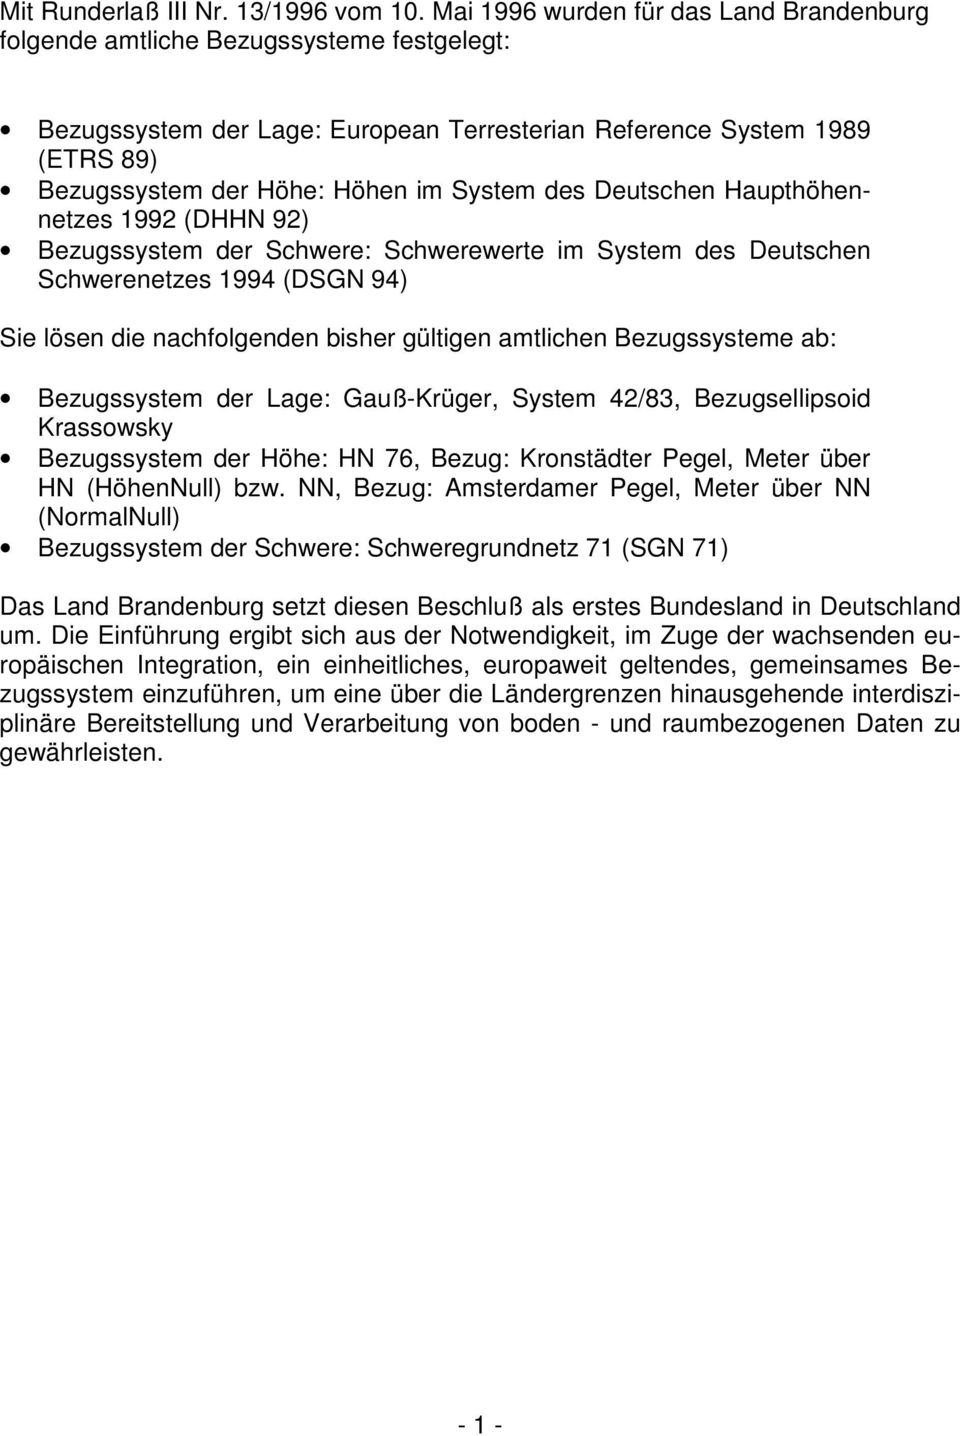 Deutschen Haupthöhennetzes 199 (DHHN 9) Bezugssyste der Schwere: Schwerewerte i Syste des Deutschen Schwerenetzes 1994 (DSGN 94) Sie lösen die nachfolgenden bisher gültigen atlichen Bezugssystee ab: